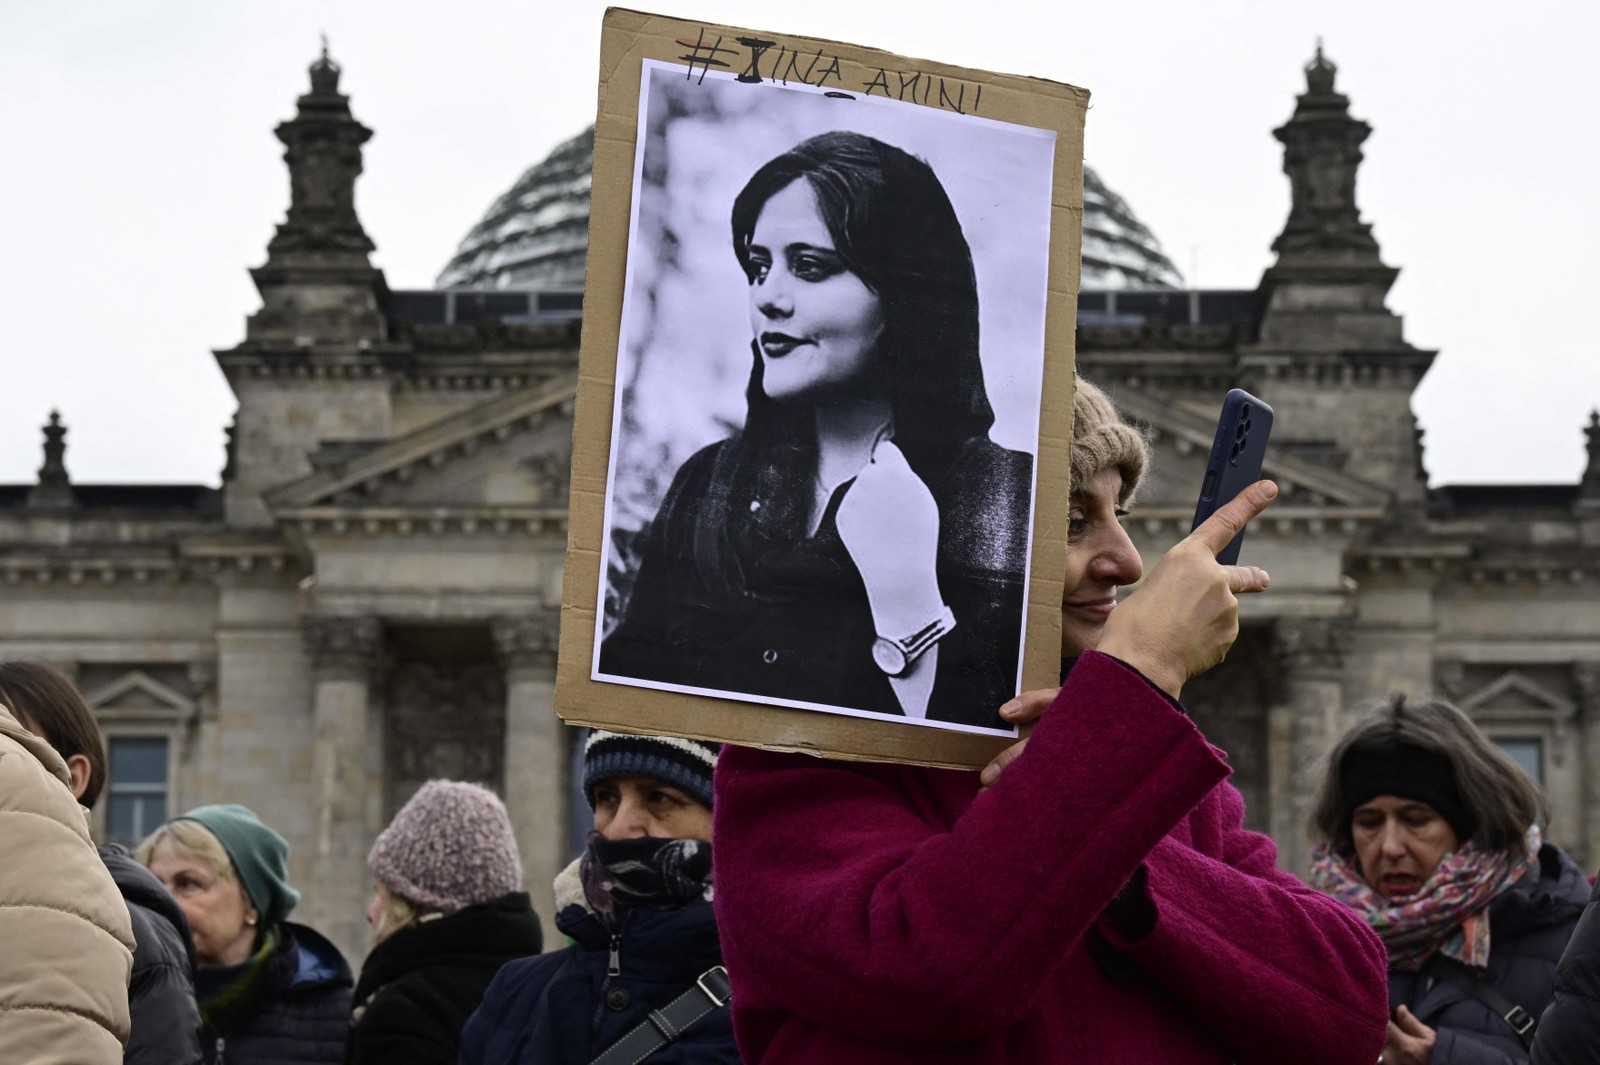 Cartaz com o retrato de Mahsa Amini, jovem iraniana que morreu após ser presa em Teerã pela polícia moral da República Islâmica, aparece em manifestação em frente à câmara baixa do parlamento alemão (Bundestag), em Berlim, pelo Dia Internacional da Mulher, em 2023. John Macdougall / AFP